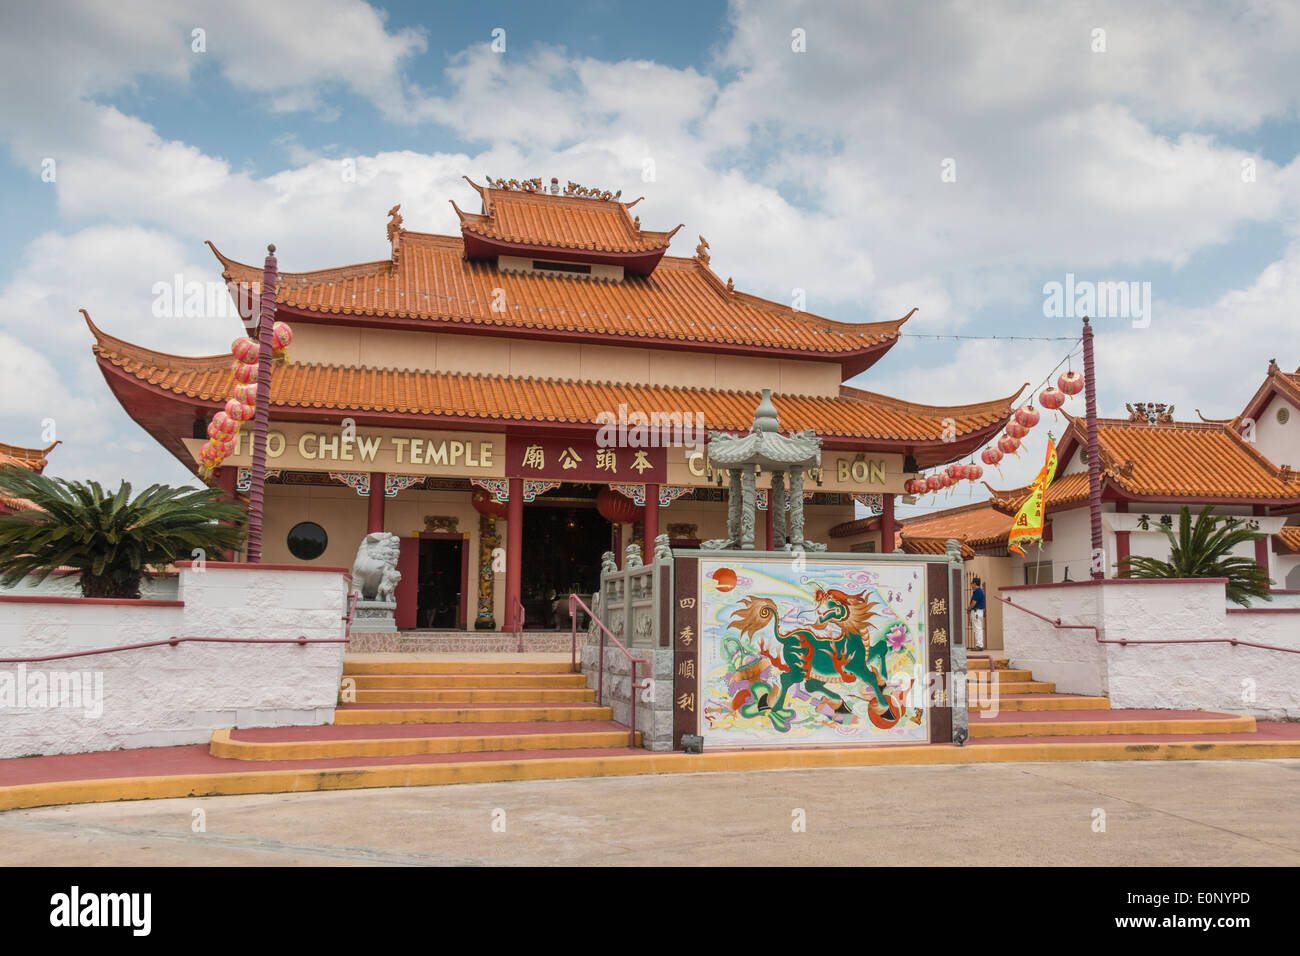 Tempio Teo-Chew, tempio vietnamita e taoista nel sud-ovest di Houston, Texas. Foto Stock